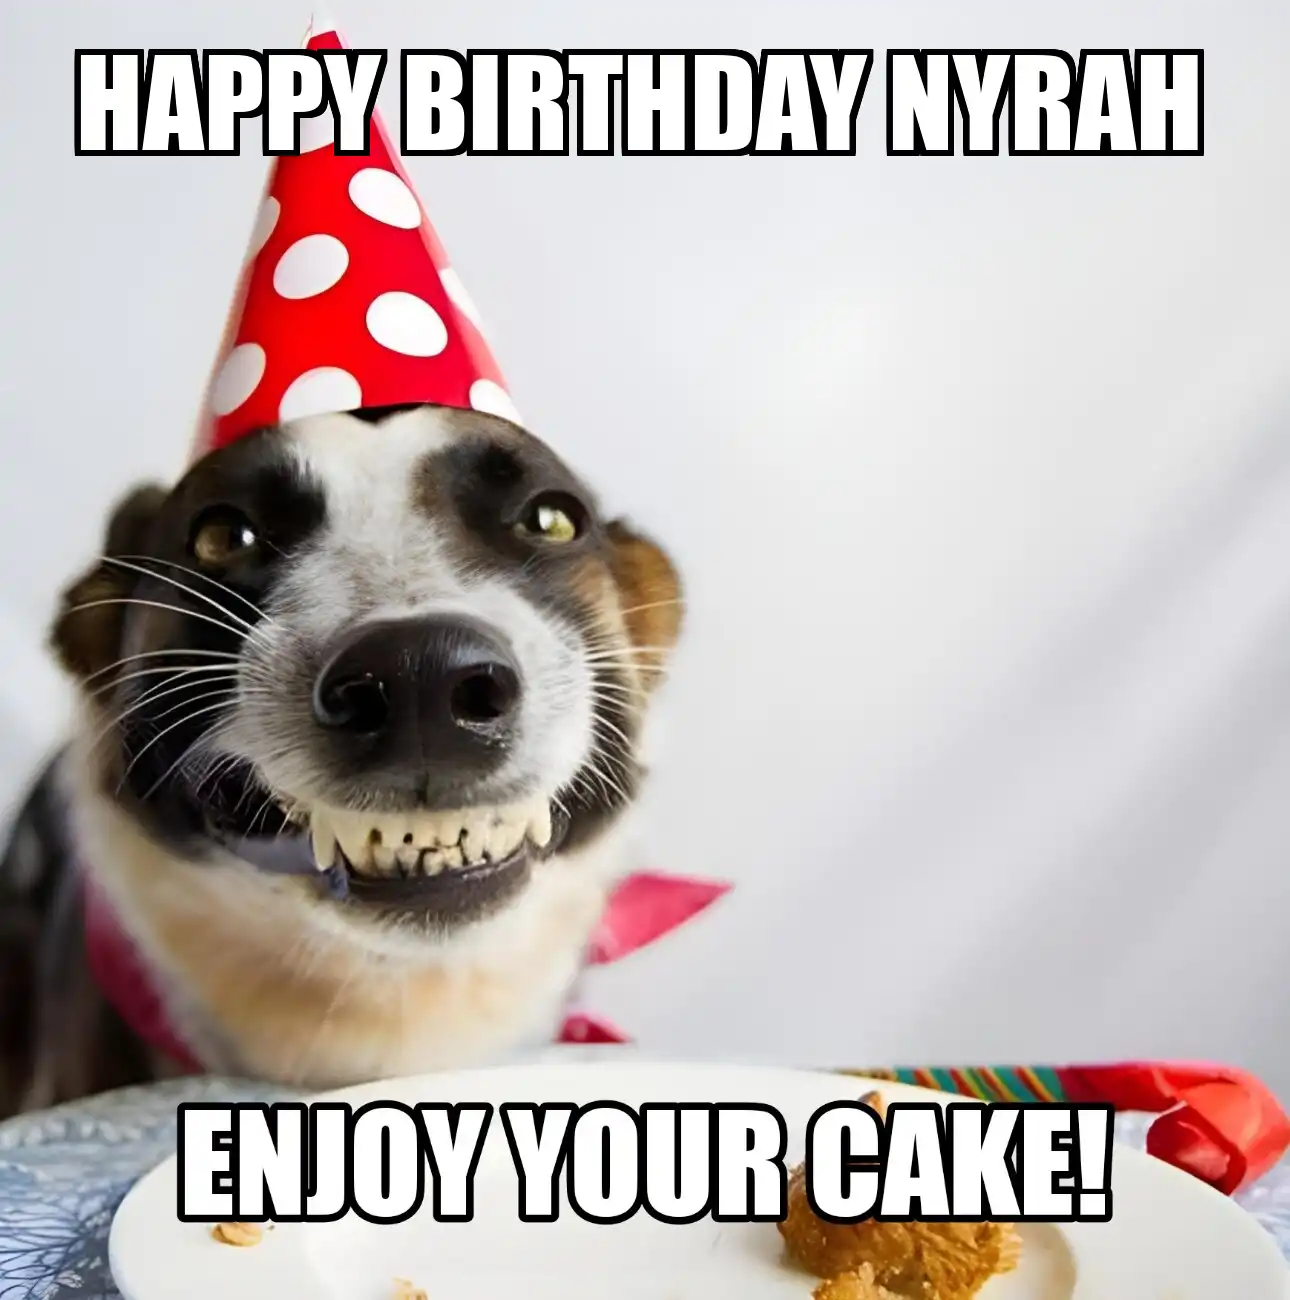 Happy Birthday Nyrah Enjoy Your Cake Dog Meme